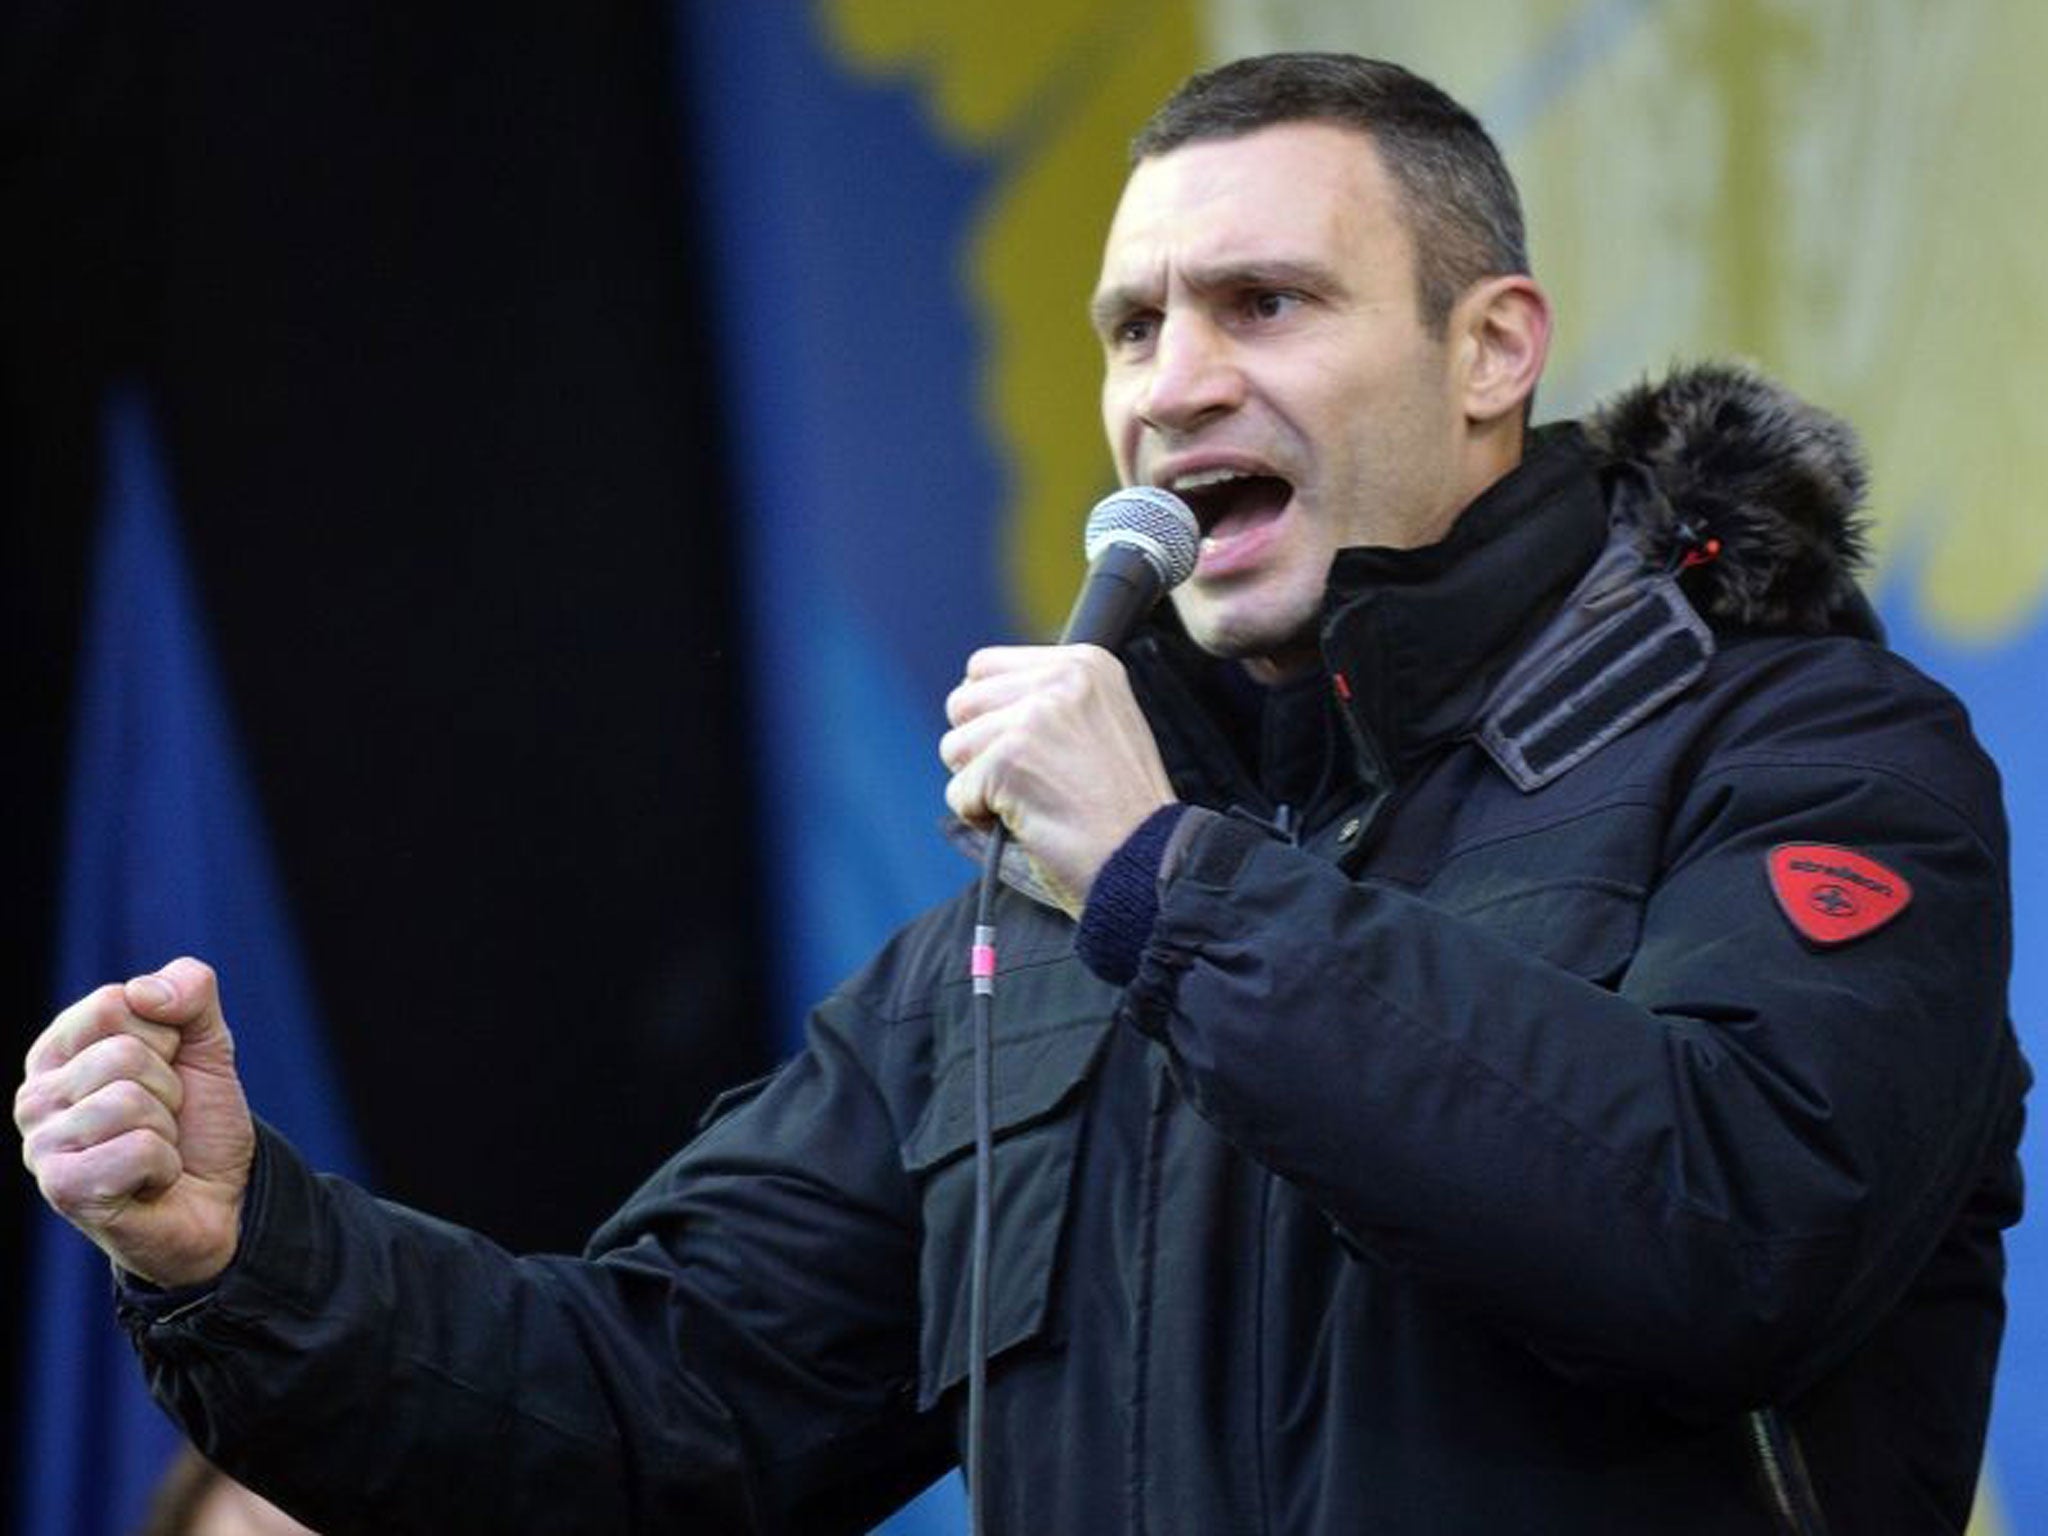 Champion’s cause: Vitali Klitschko is challenging Ukraine’s president